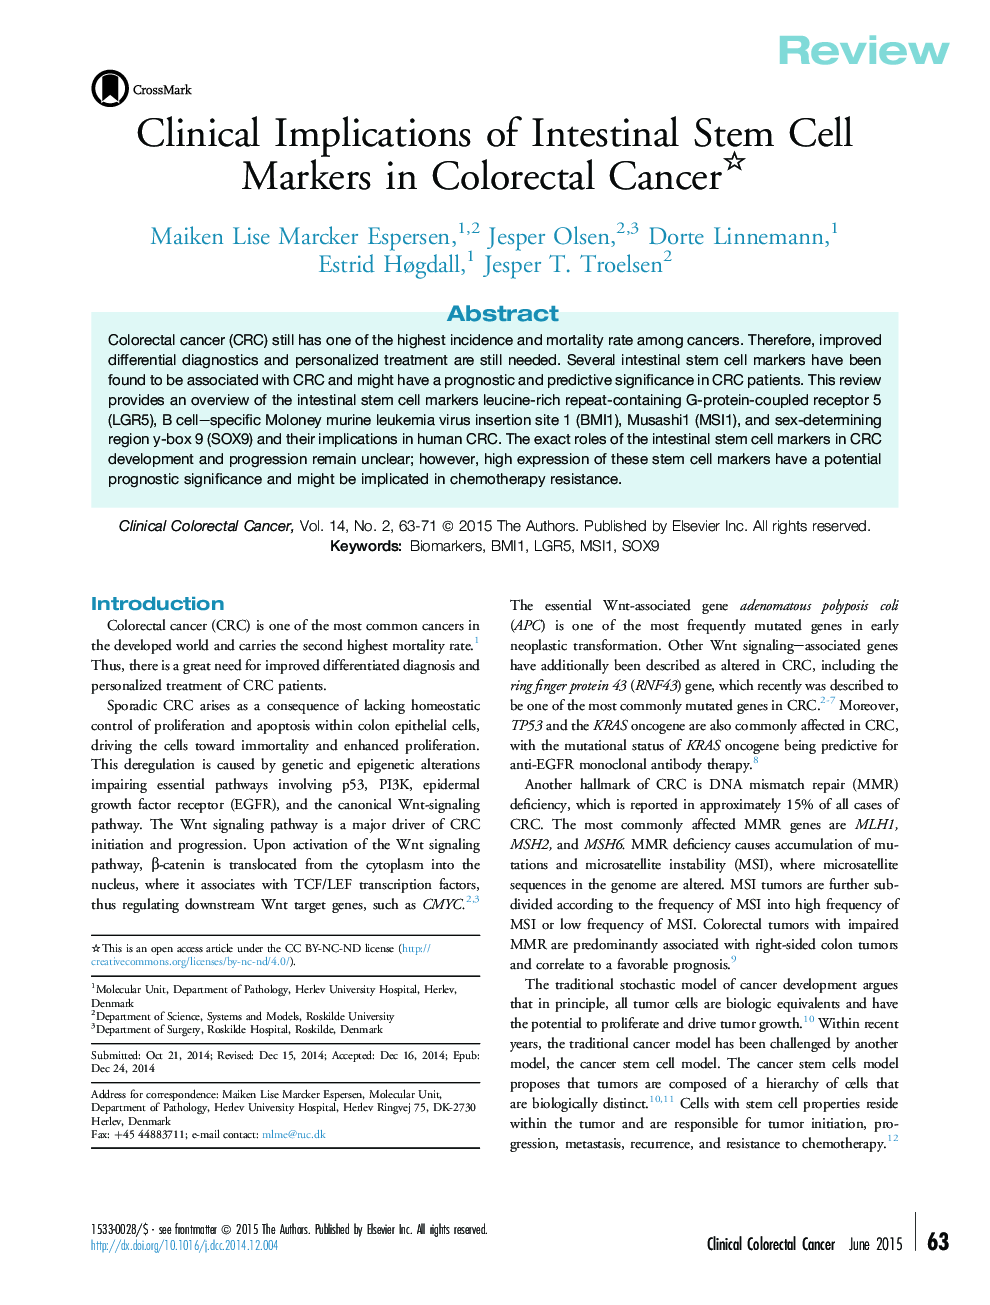 پیامدهای بالینی نشانه های سلول های بنیادی روده در سرطان کولورکتال 